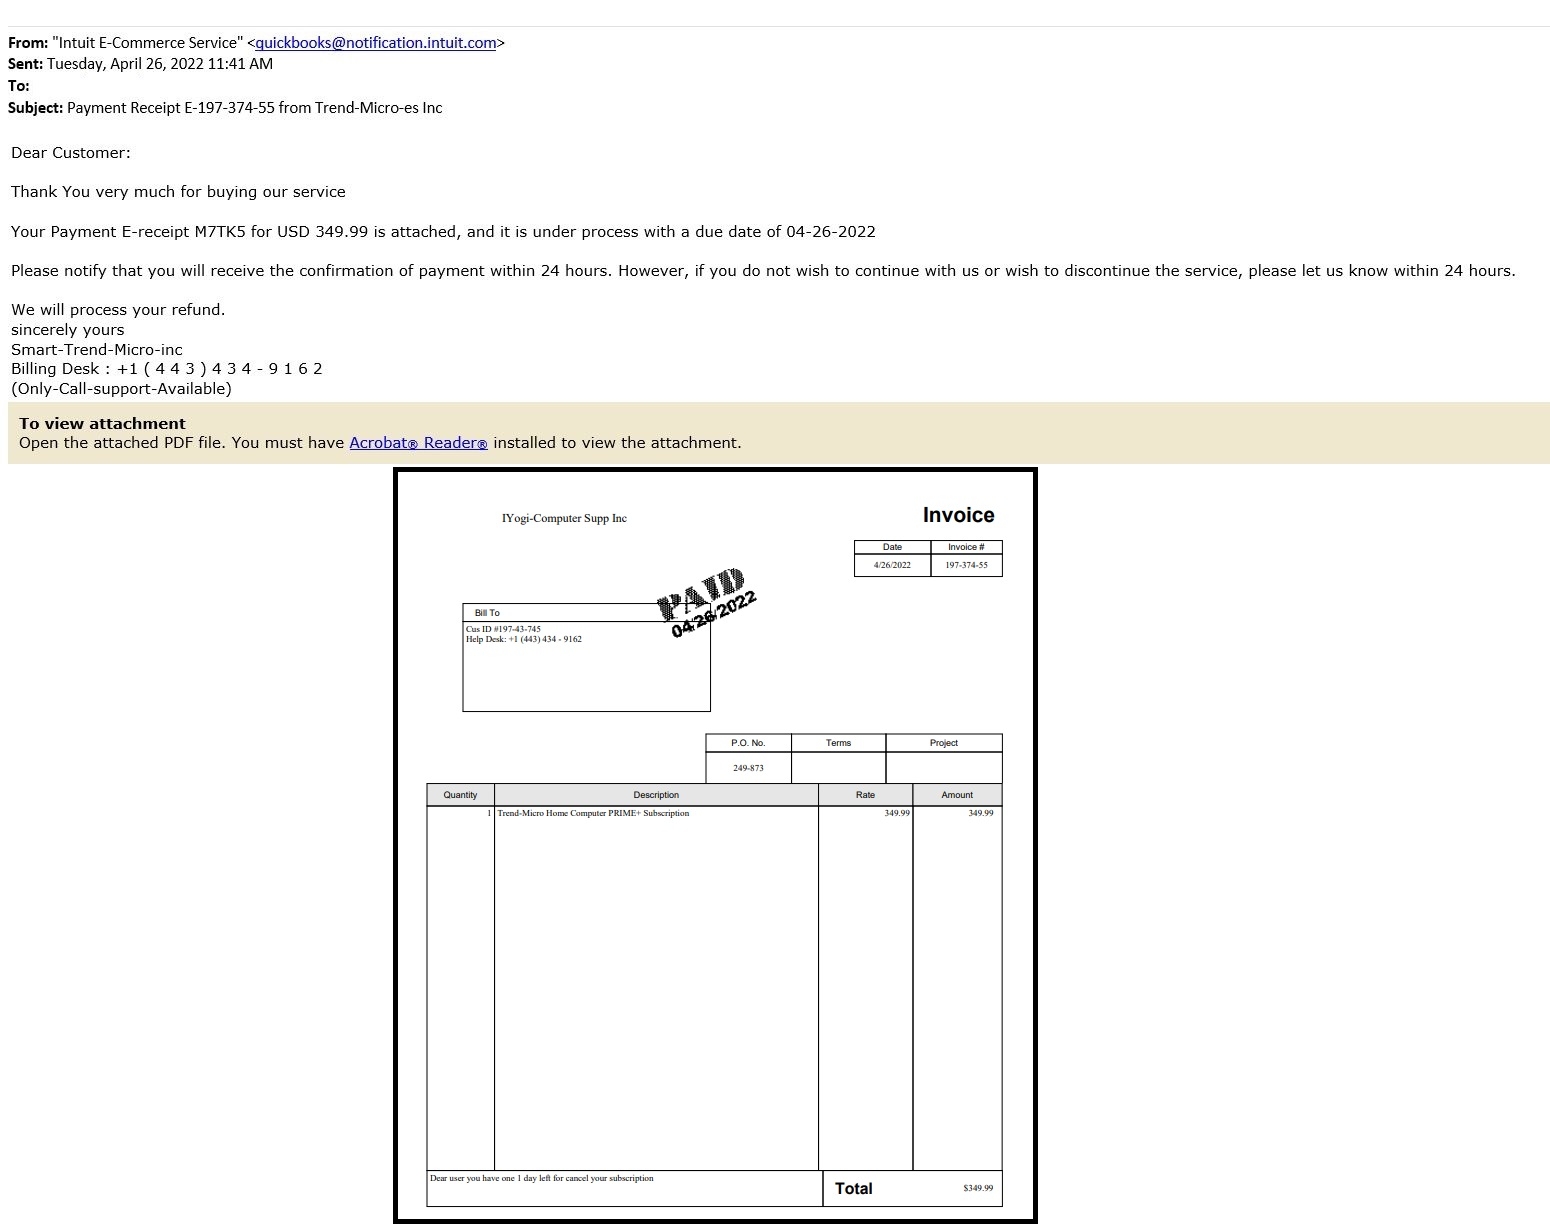 Fake Email - April 2022